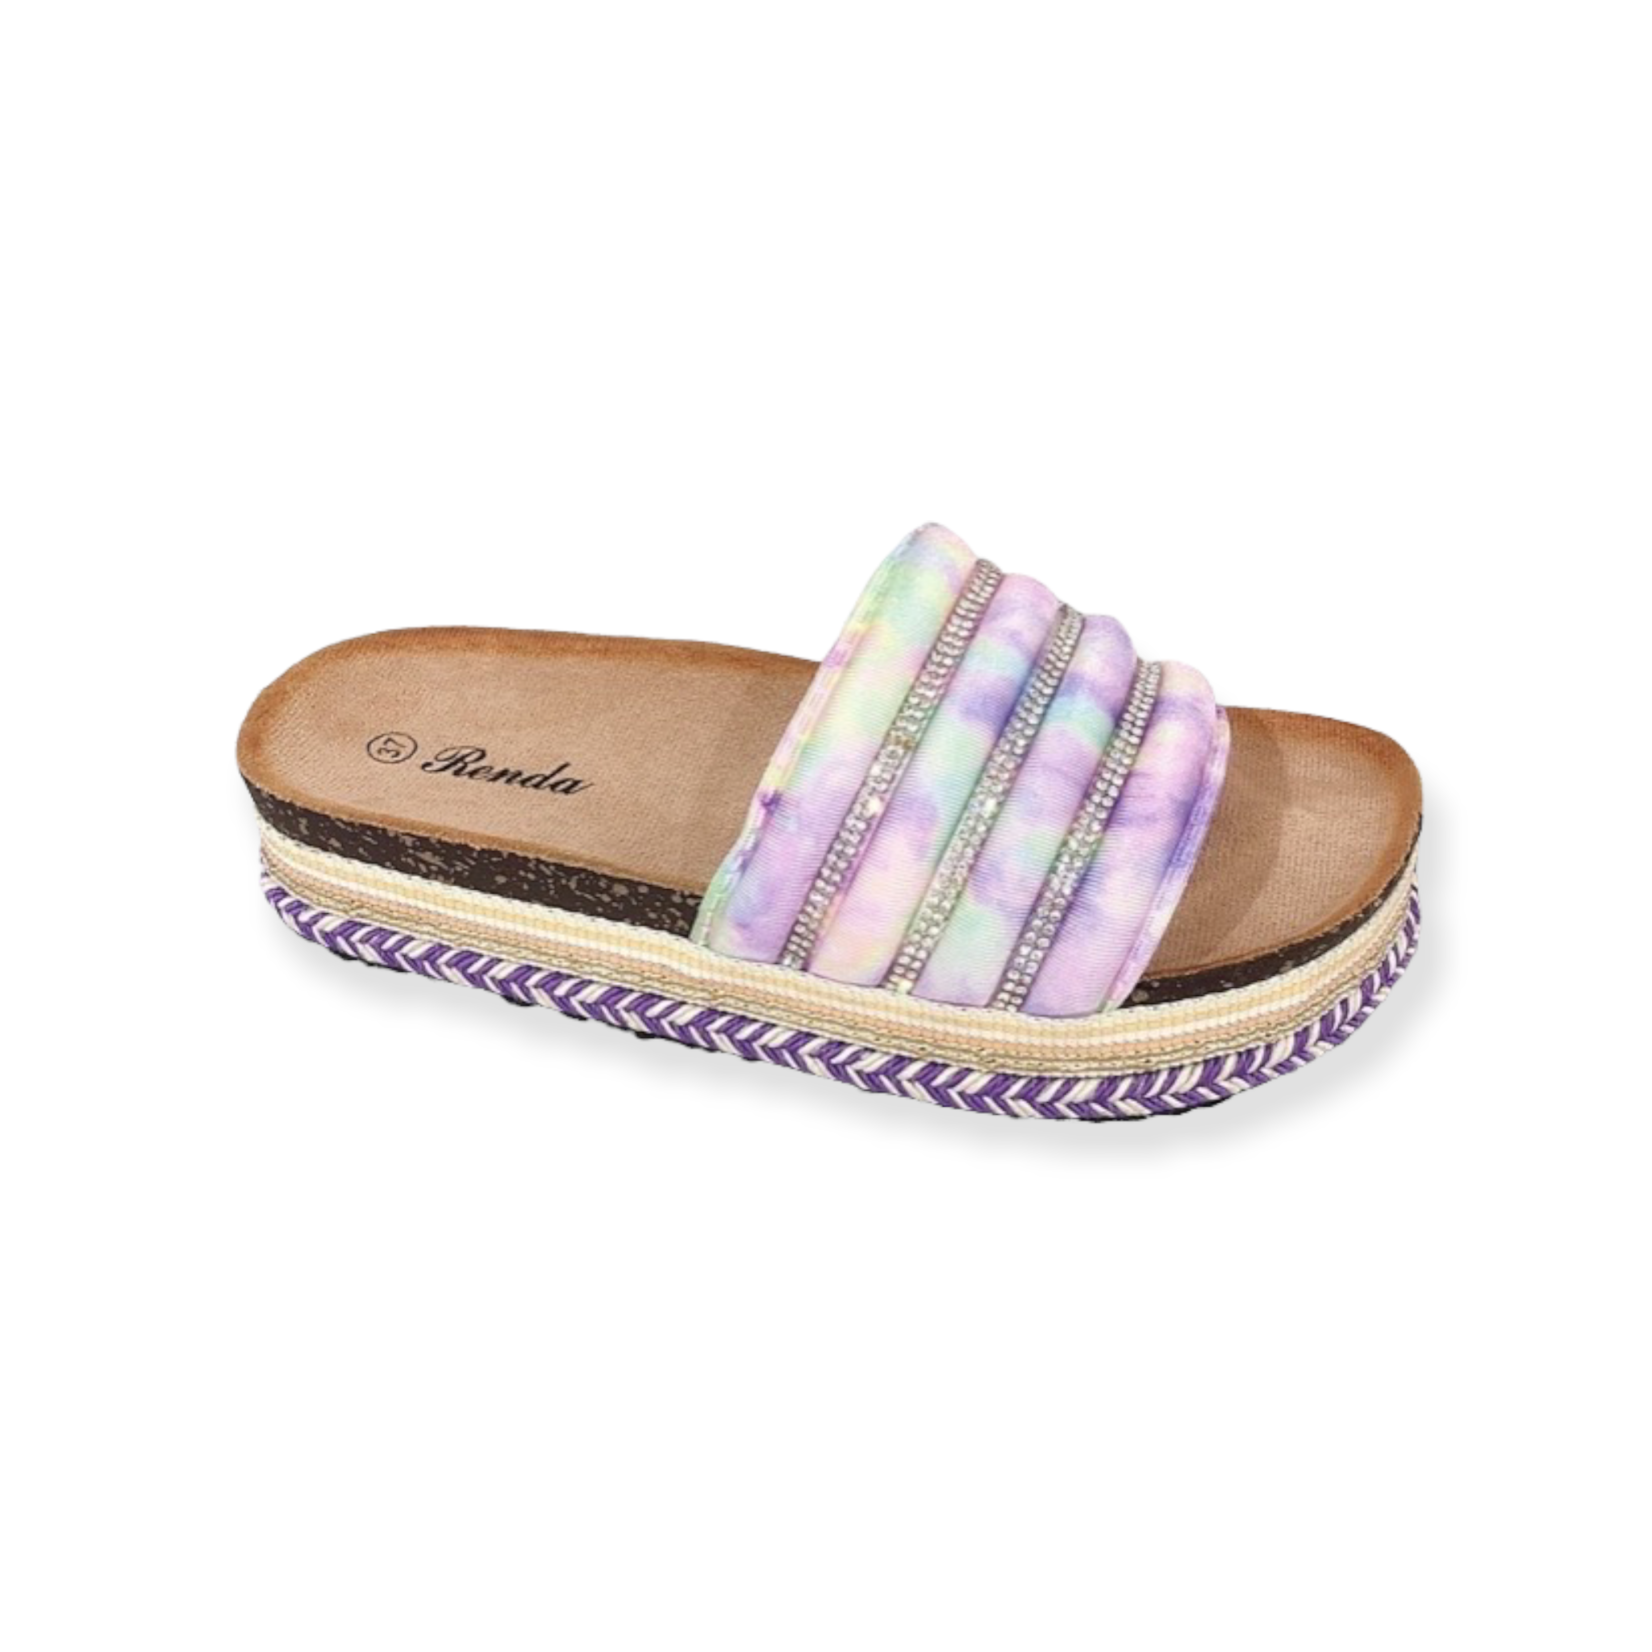 StarlightsFashionBabe Tie-dye slippers met gevlochten zool & strass details